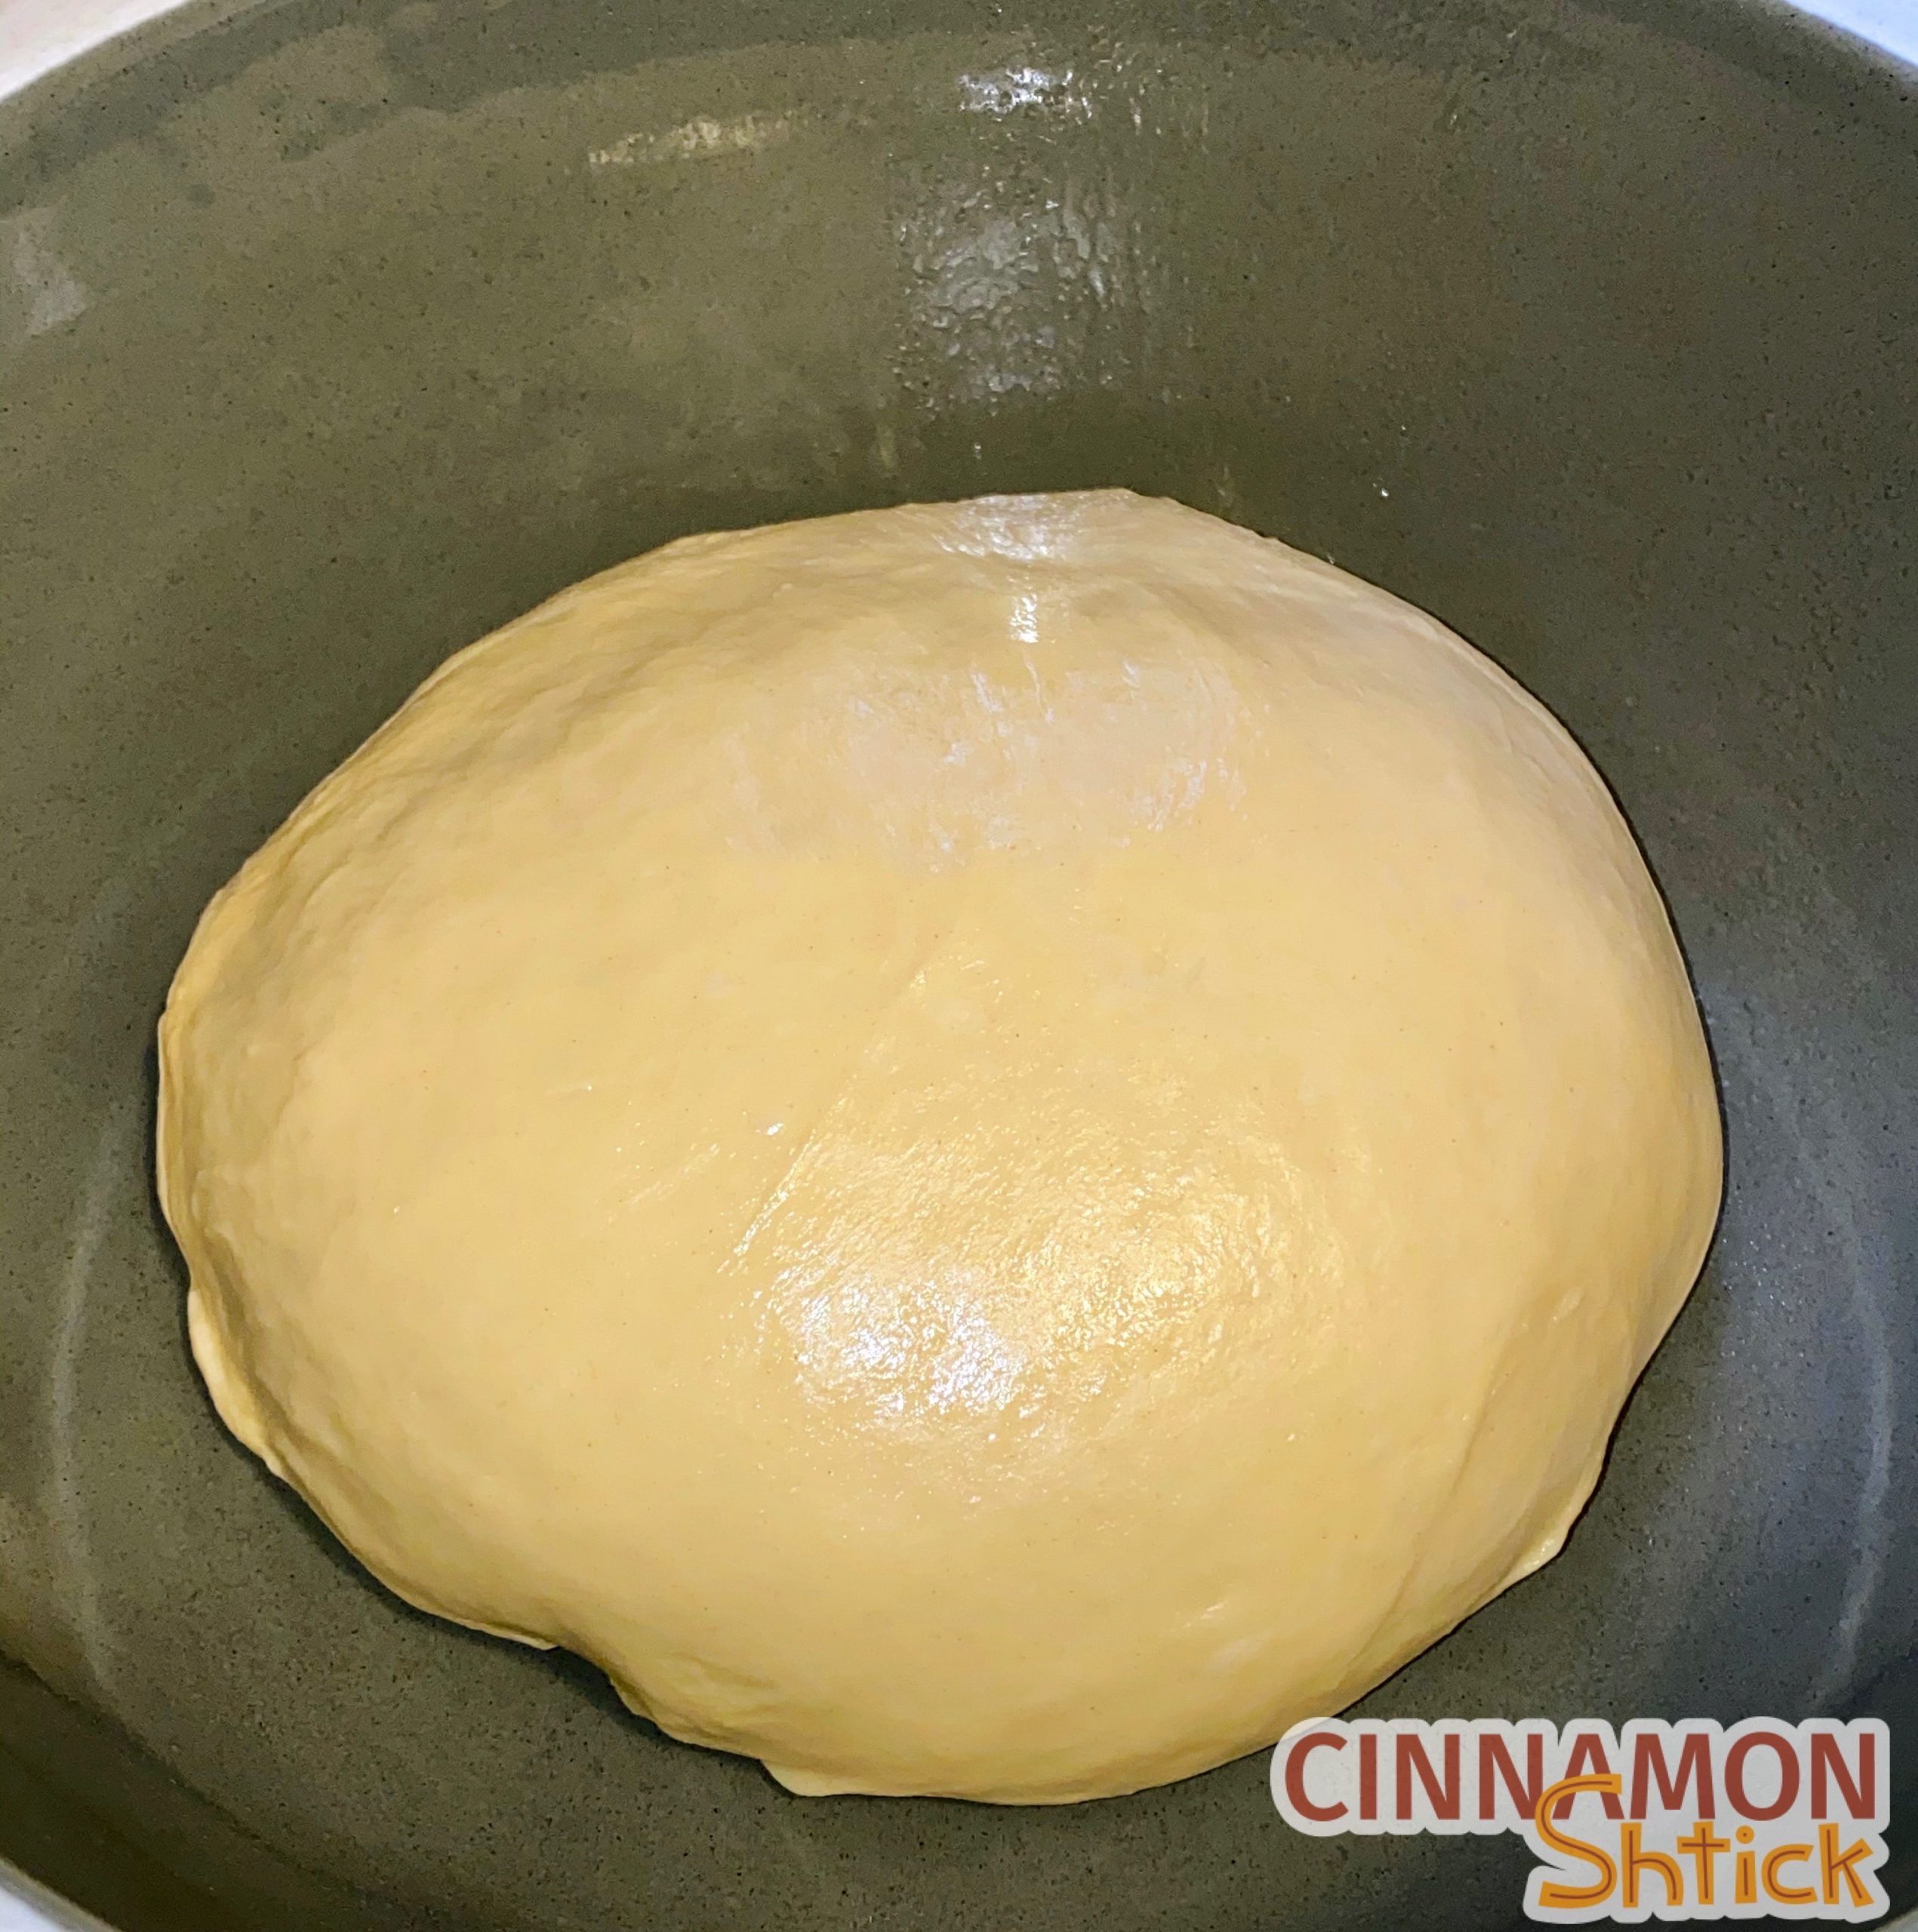 Babka dough in ball ready to rise